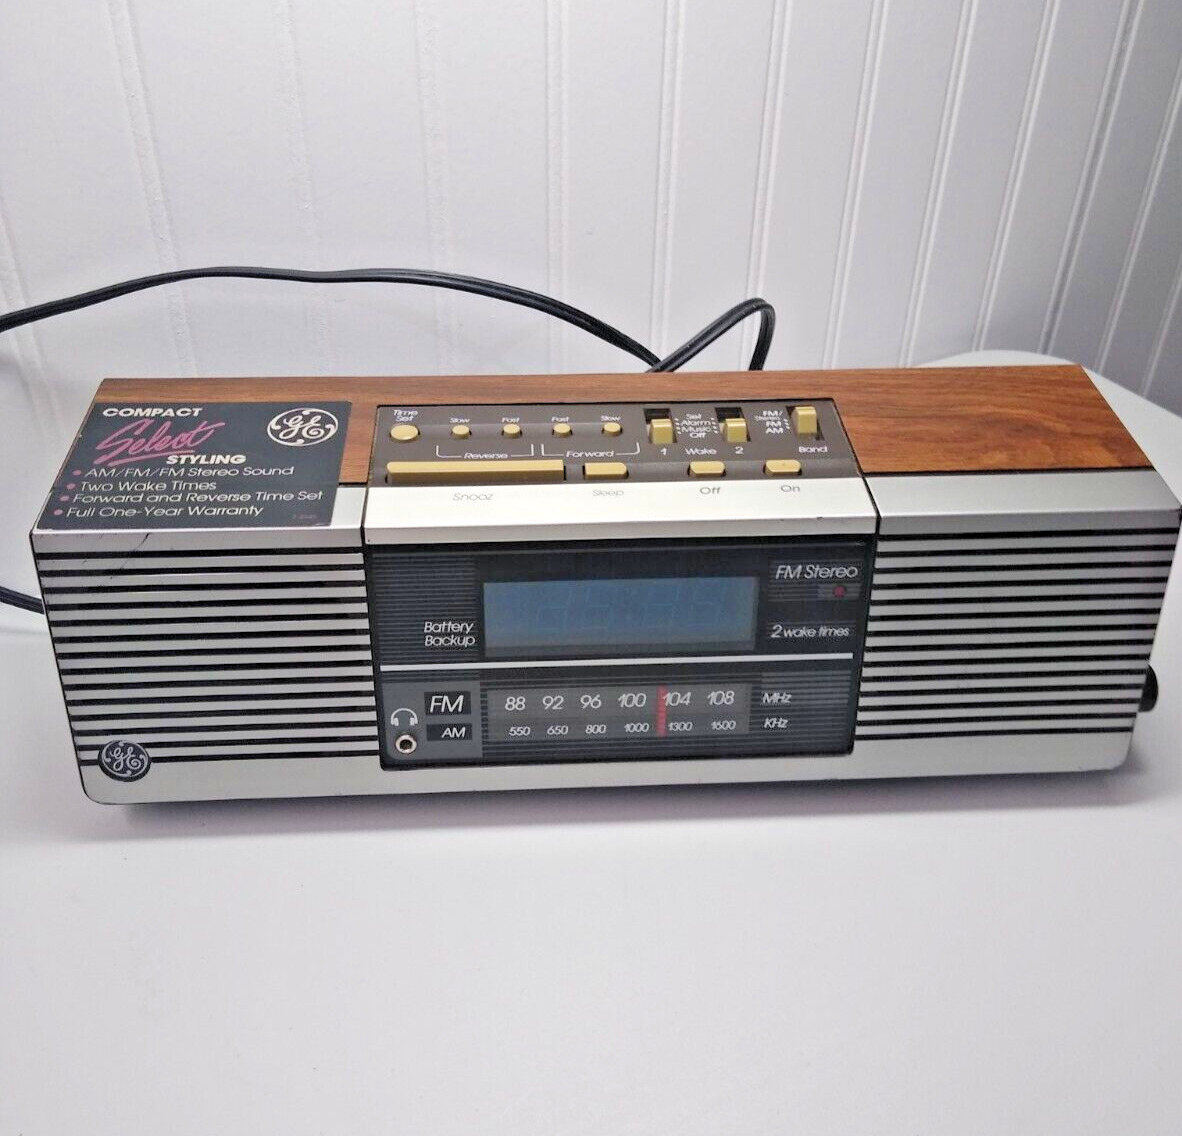 Vintage GE Alarm Clock Model 7-4945A - Tested